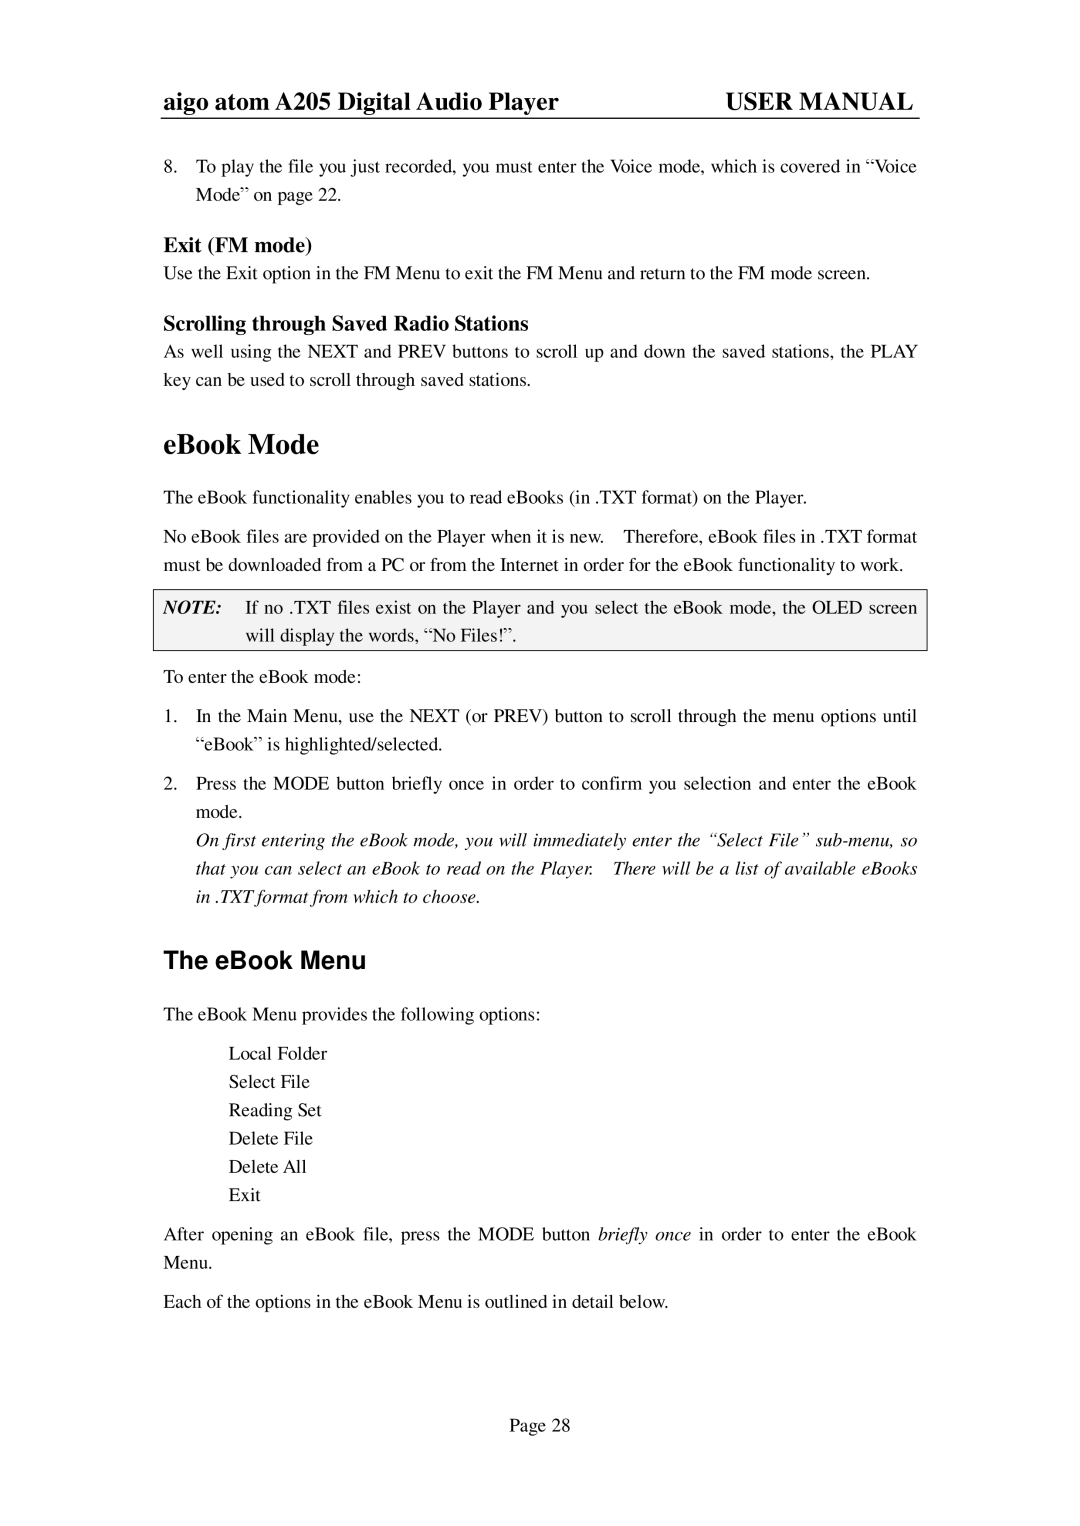 Aigo atom A205 user manual EBook Mode, EBook Menu, Exit FM mode, Scrolling through Saved Radio Stations 